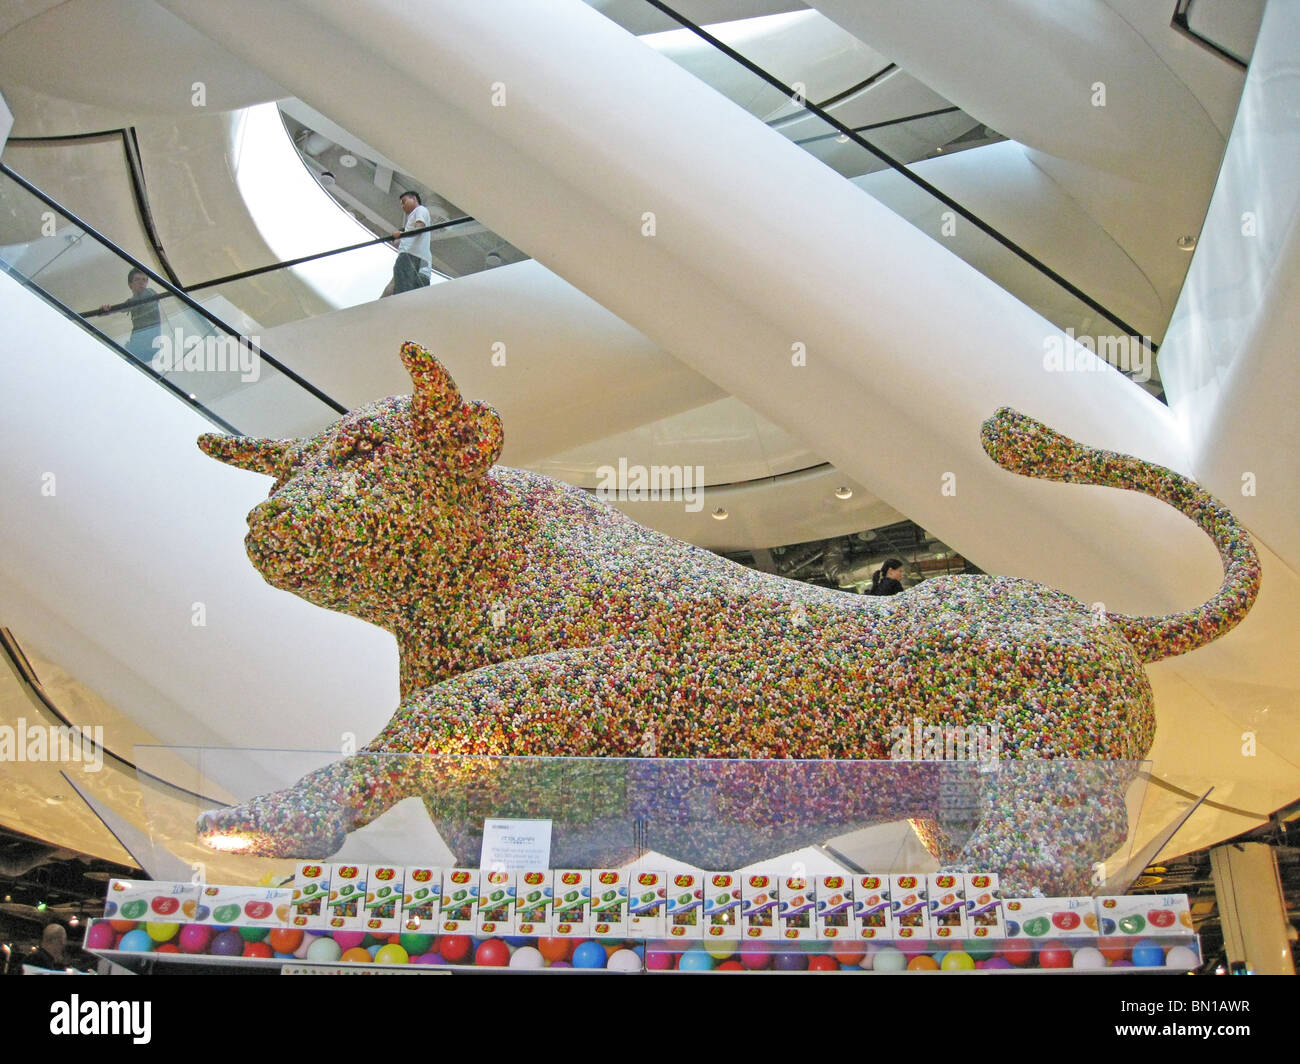 Statue de taureau (fait de sucreries) à l'intérieur de Selfridges, centre commercial Bullring, Birmingham, West Midlands, England, UK. Banque D'Images